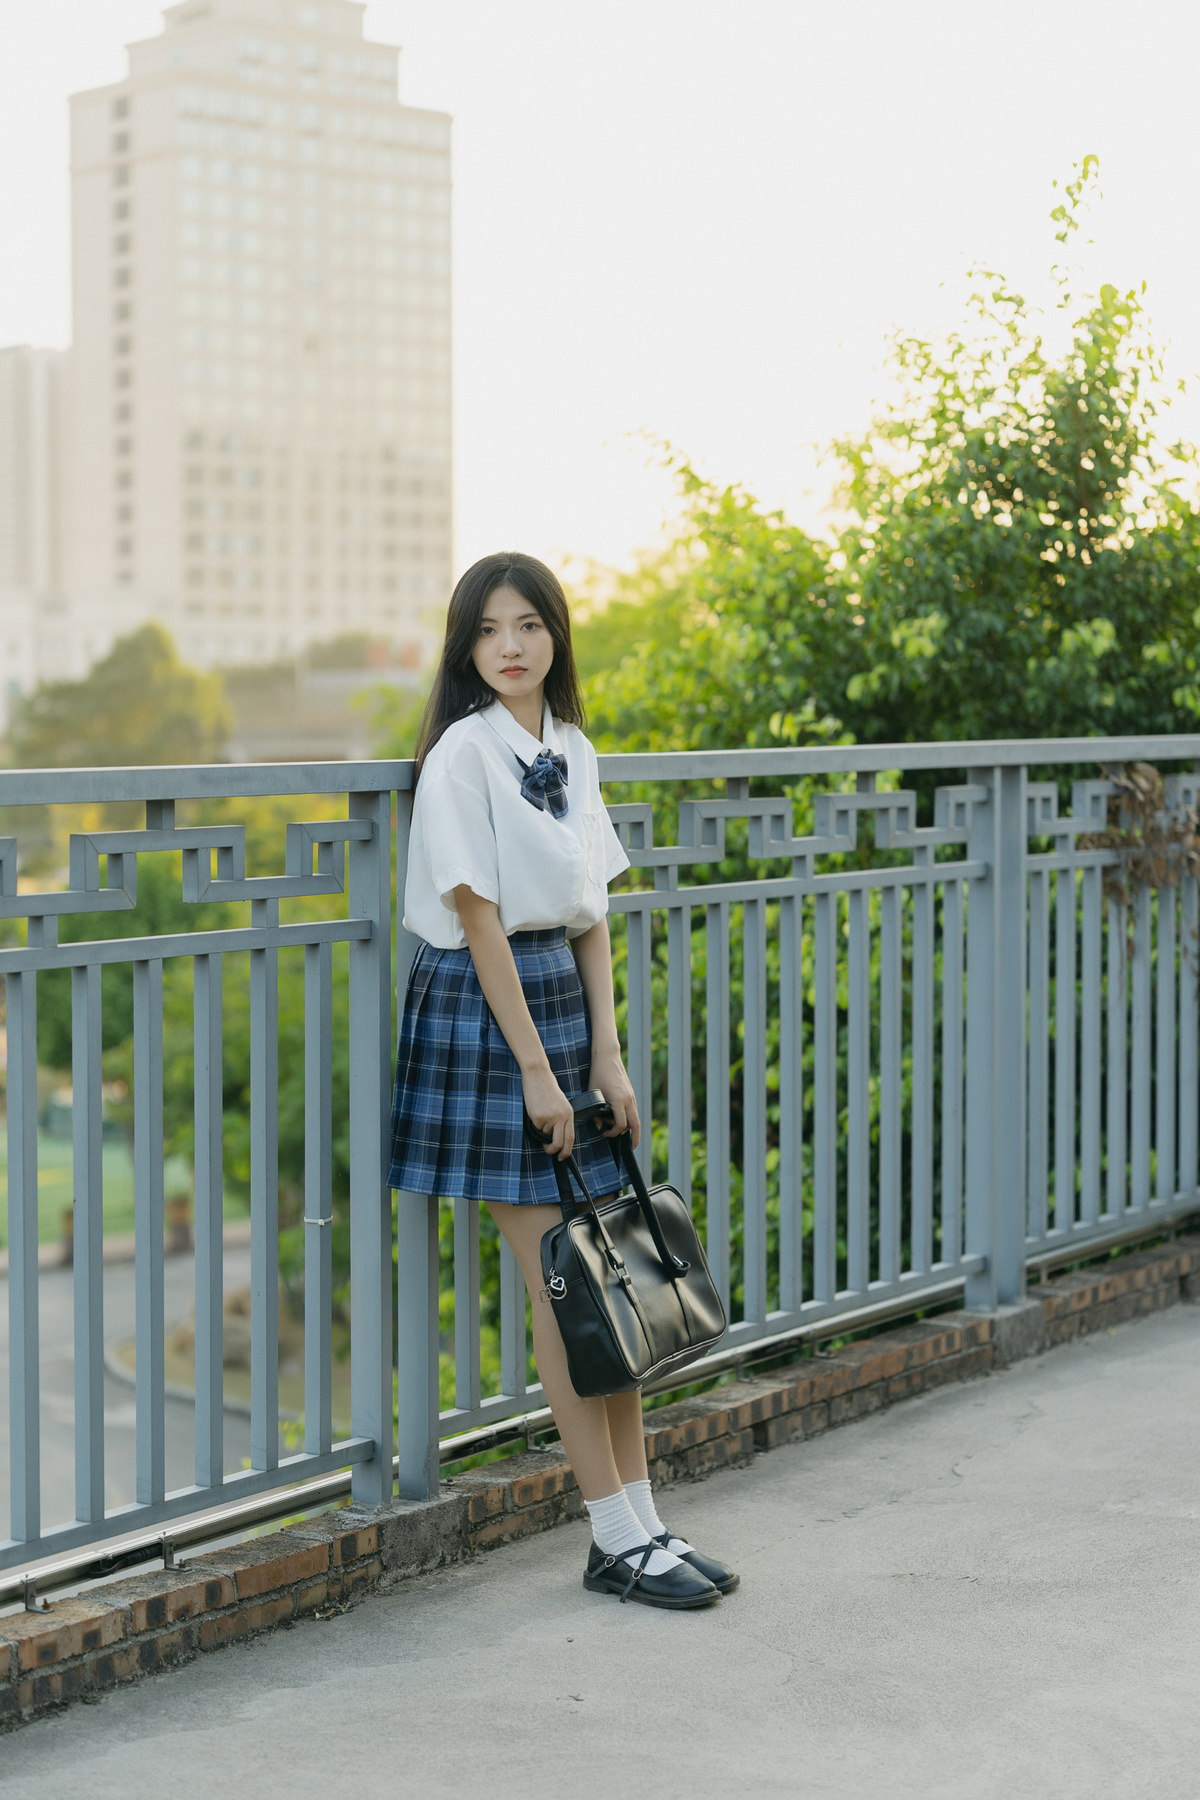 一位穿着裙子和校服的年轻女子站在桥上